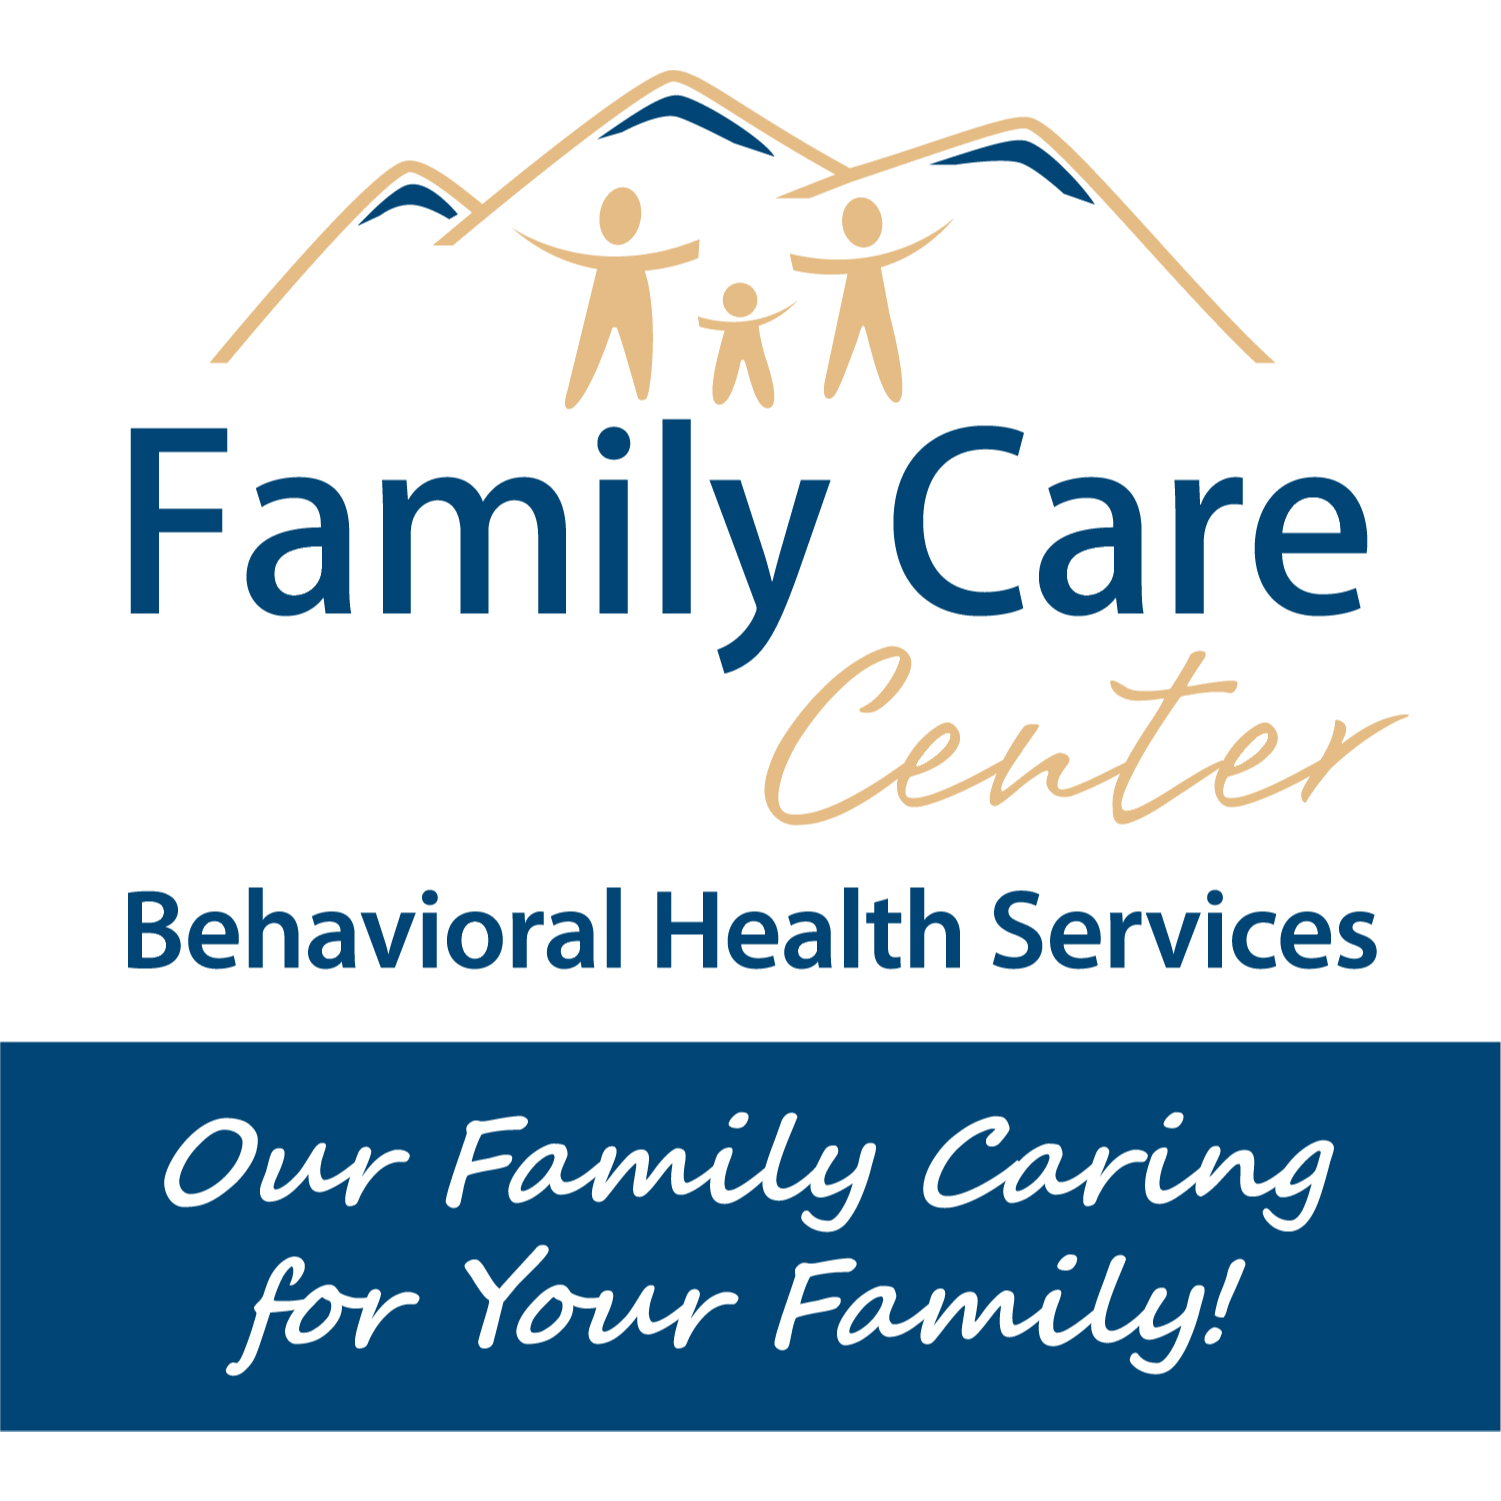 Family Care Center